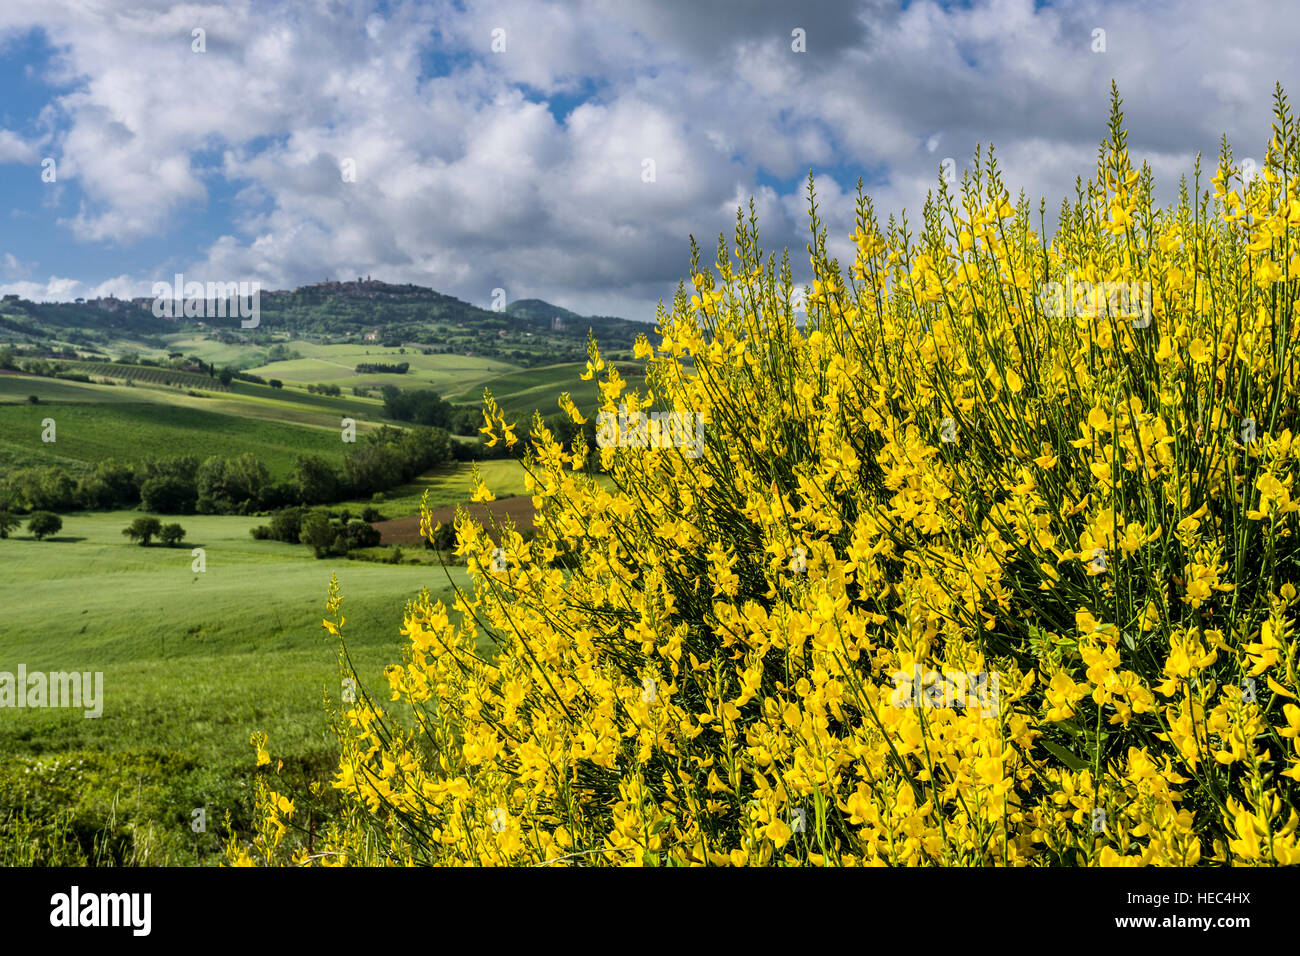 Verde típico paisaje toscano en Val d'Orcia con colinas, campos, árboles y arbustos de retama amarilla y azul cielo nublado Foto de stock